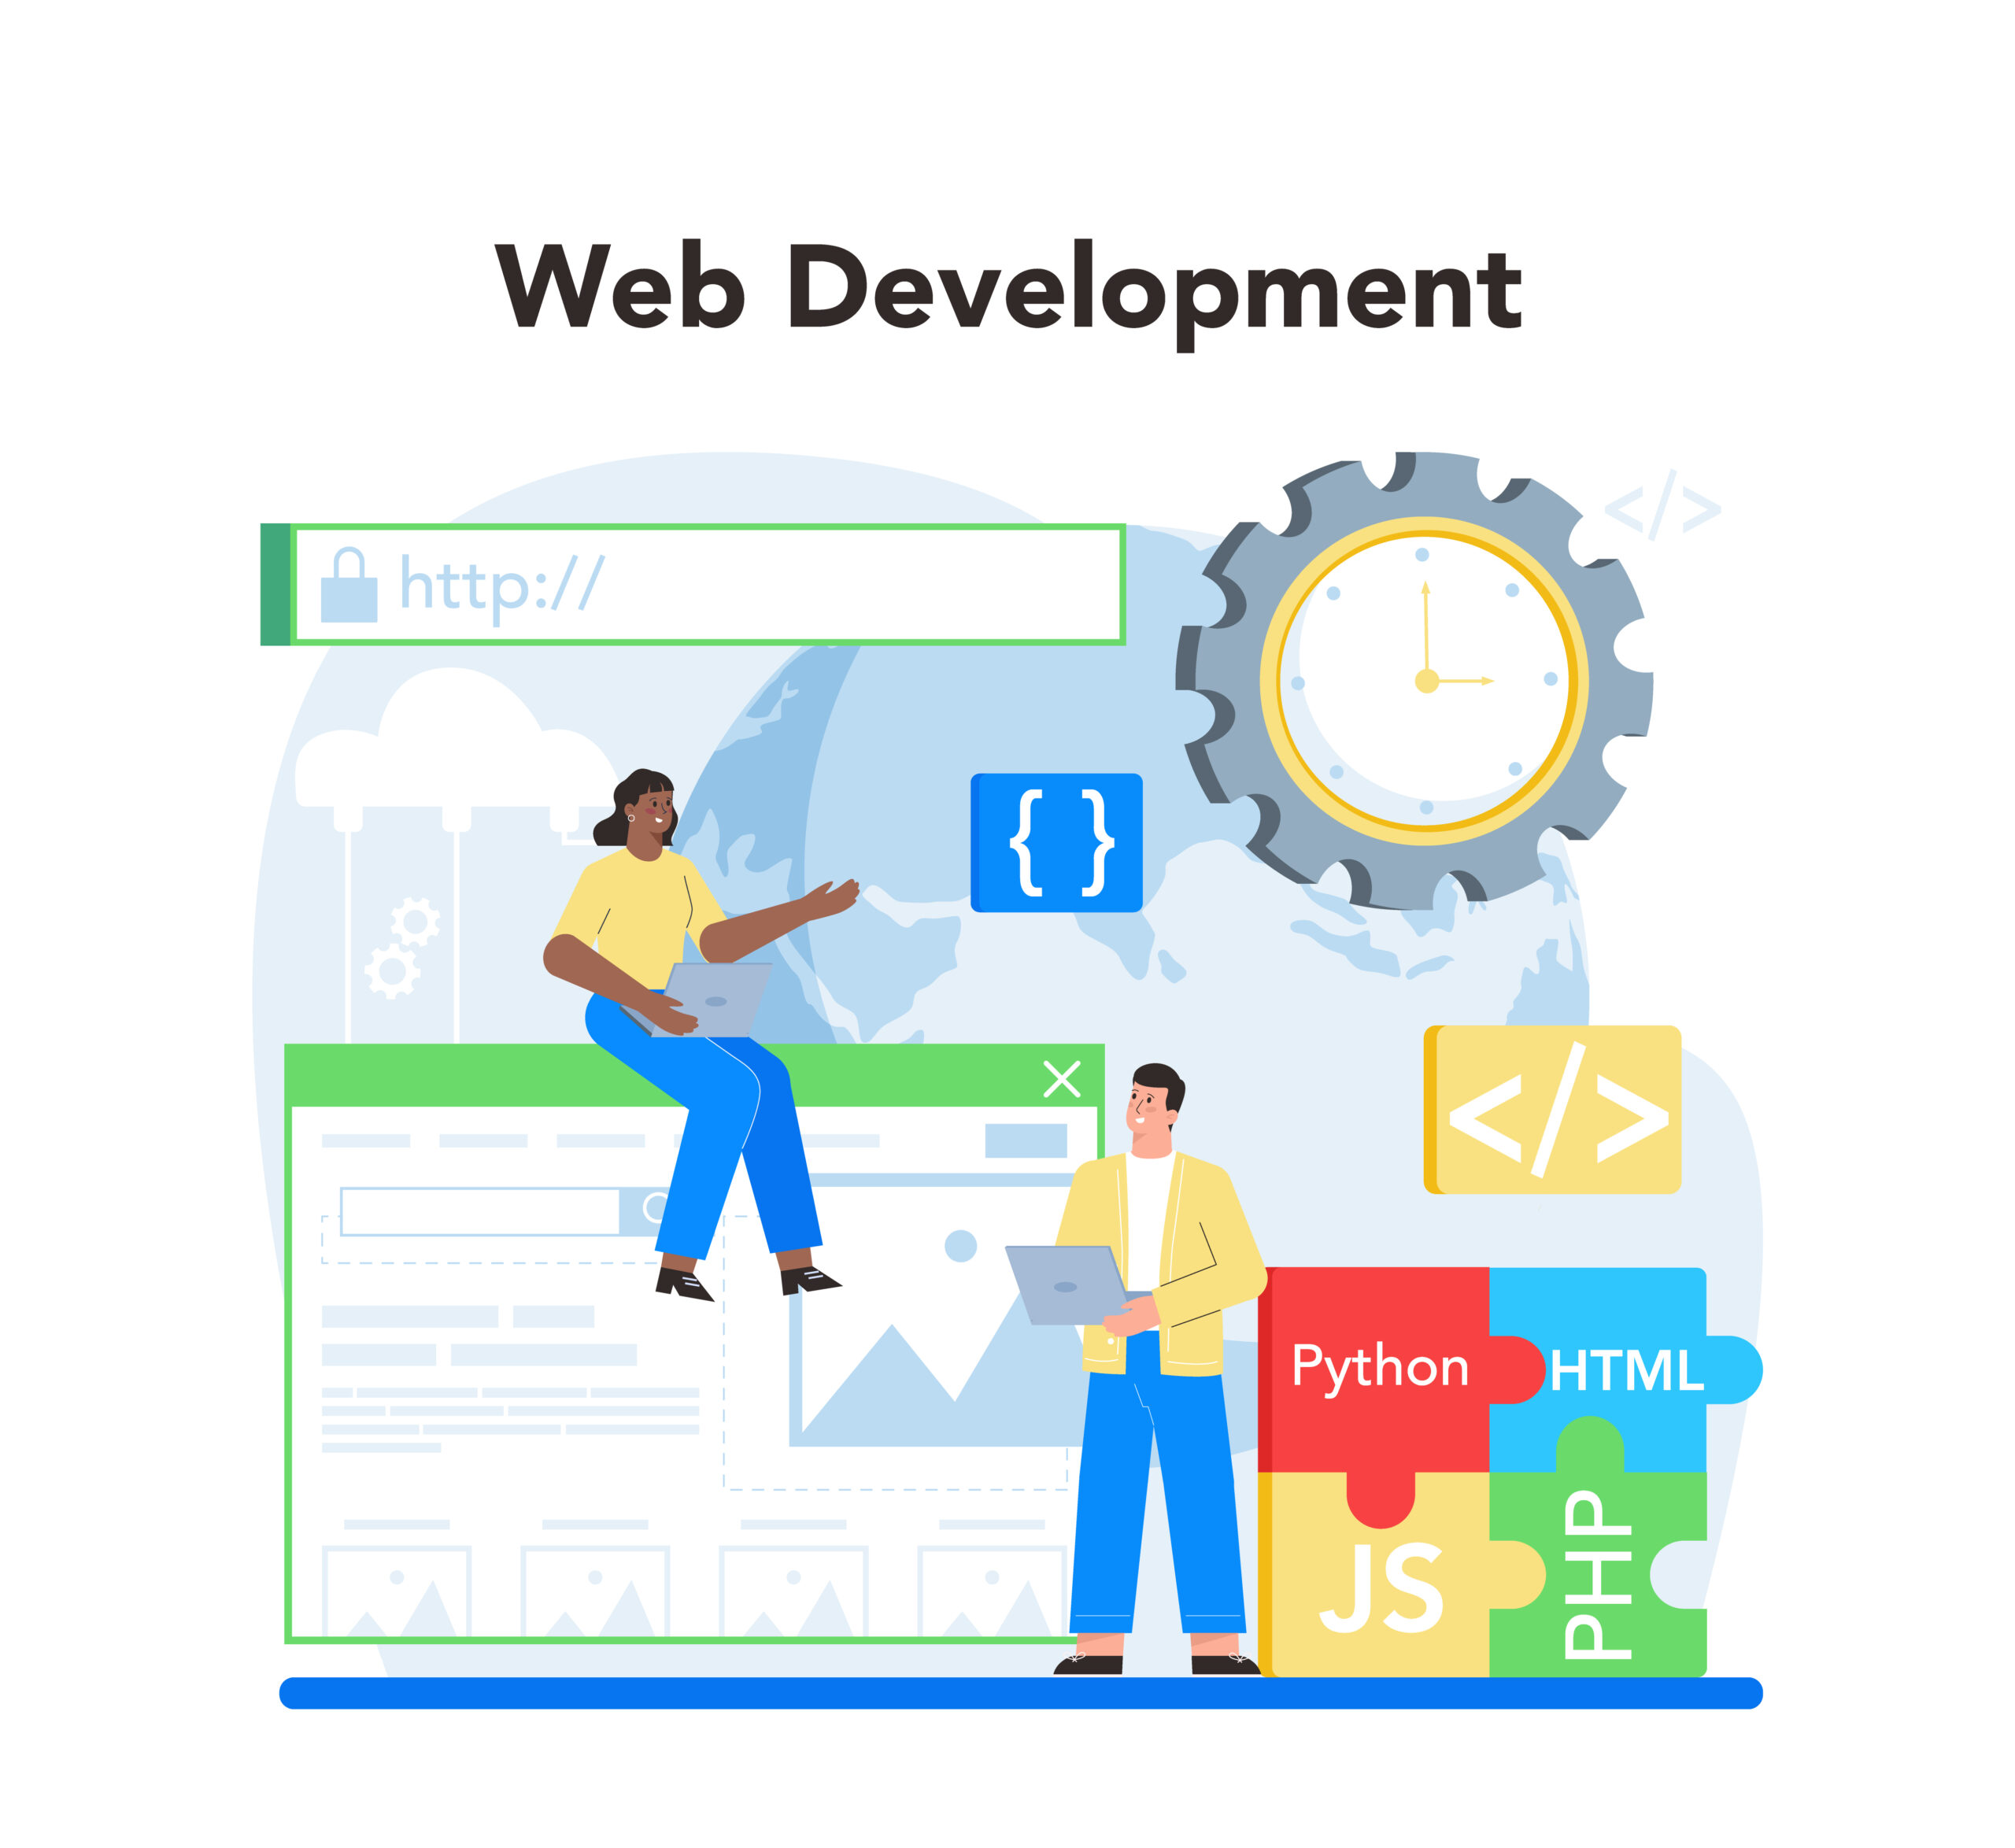 Modern Web Development